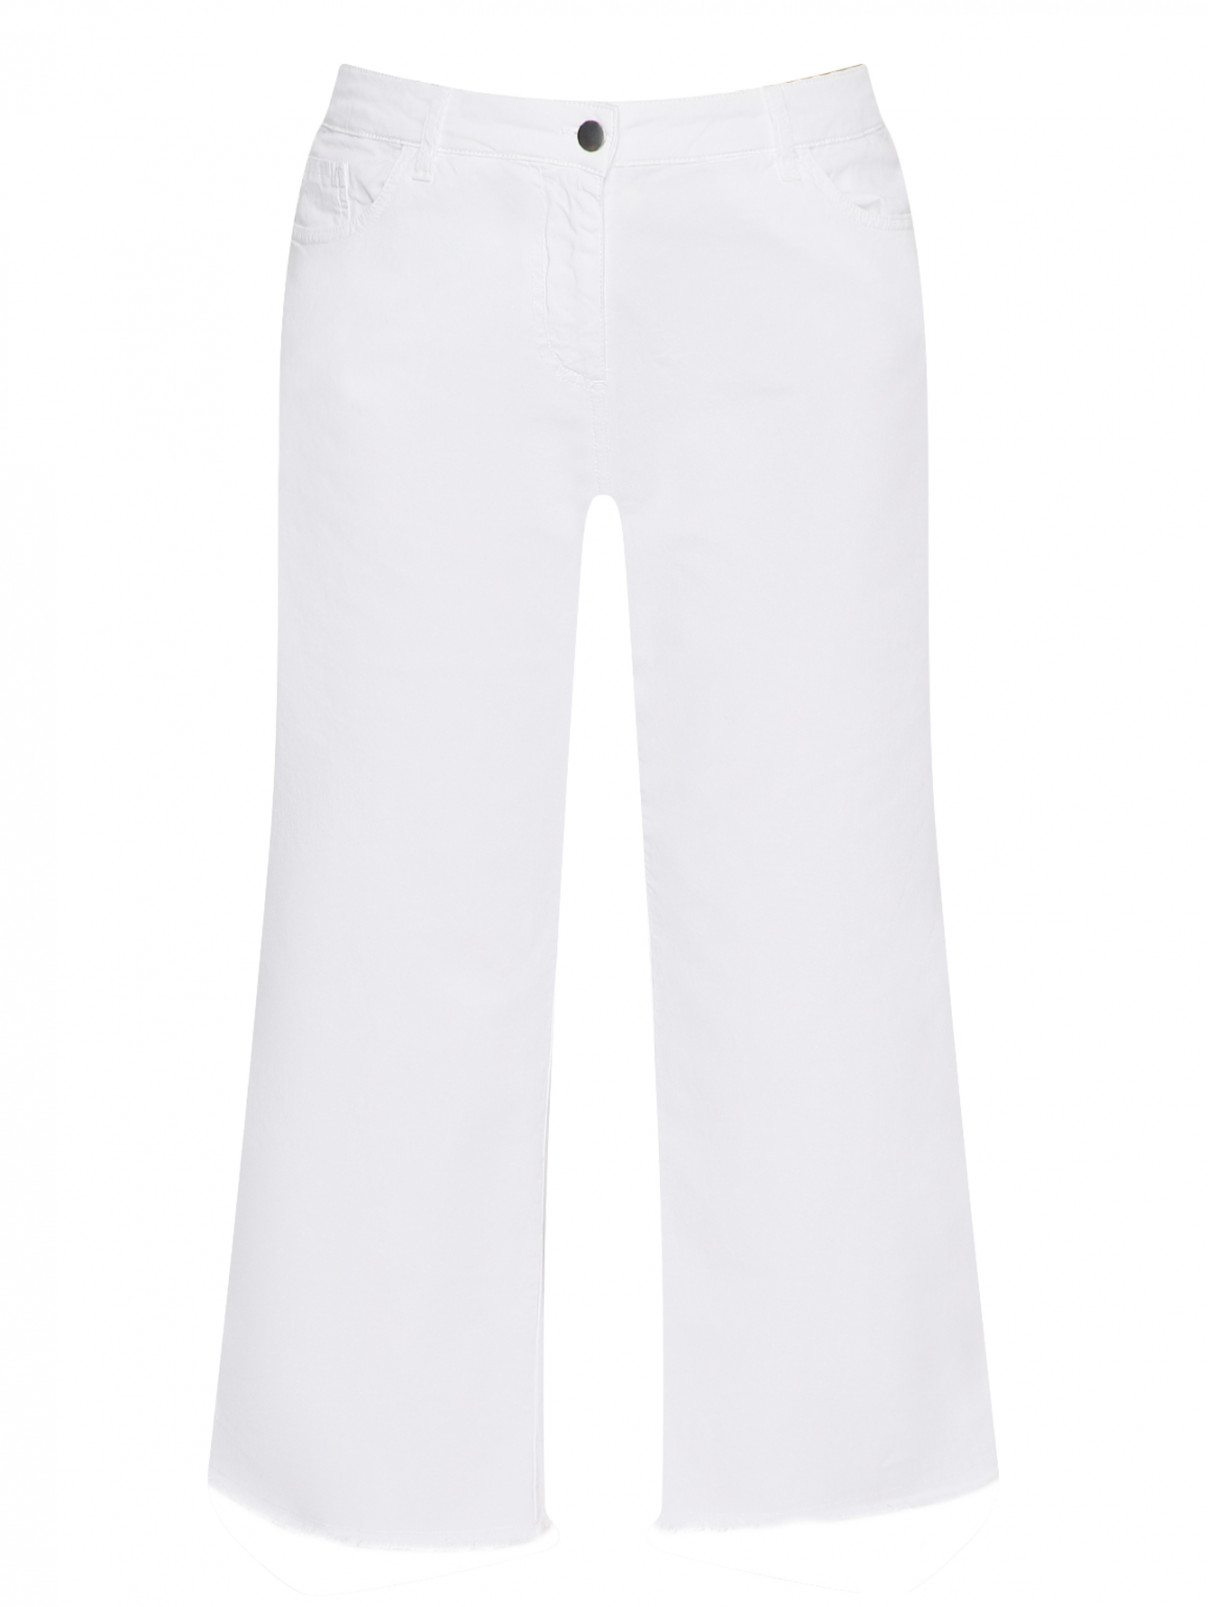 Укороченные джинсы из хлопка Persona by Marina Rinaldi  –  Общий вид  – Цвет:  Белый